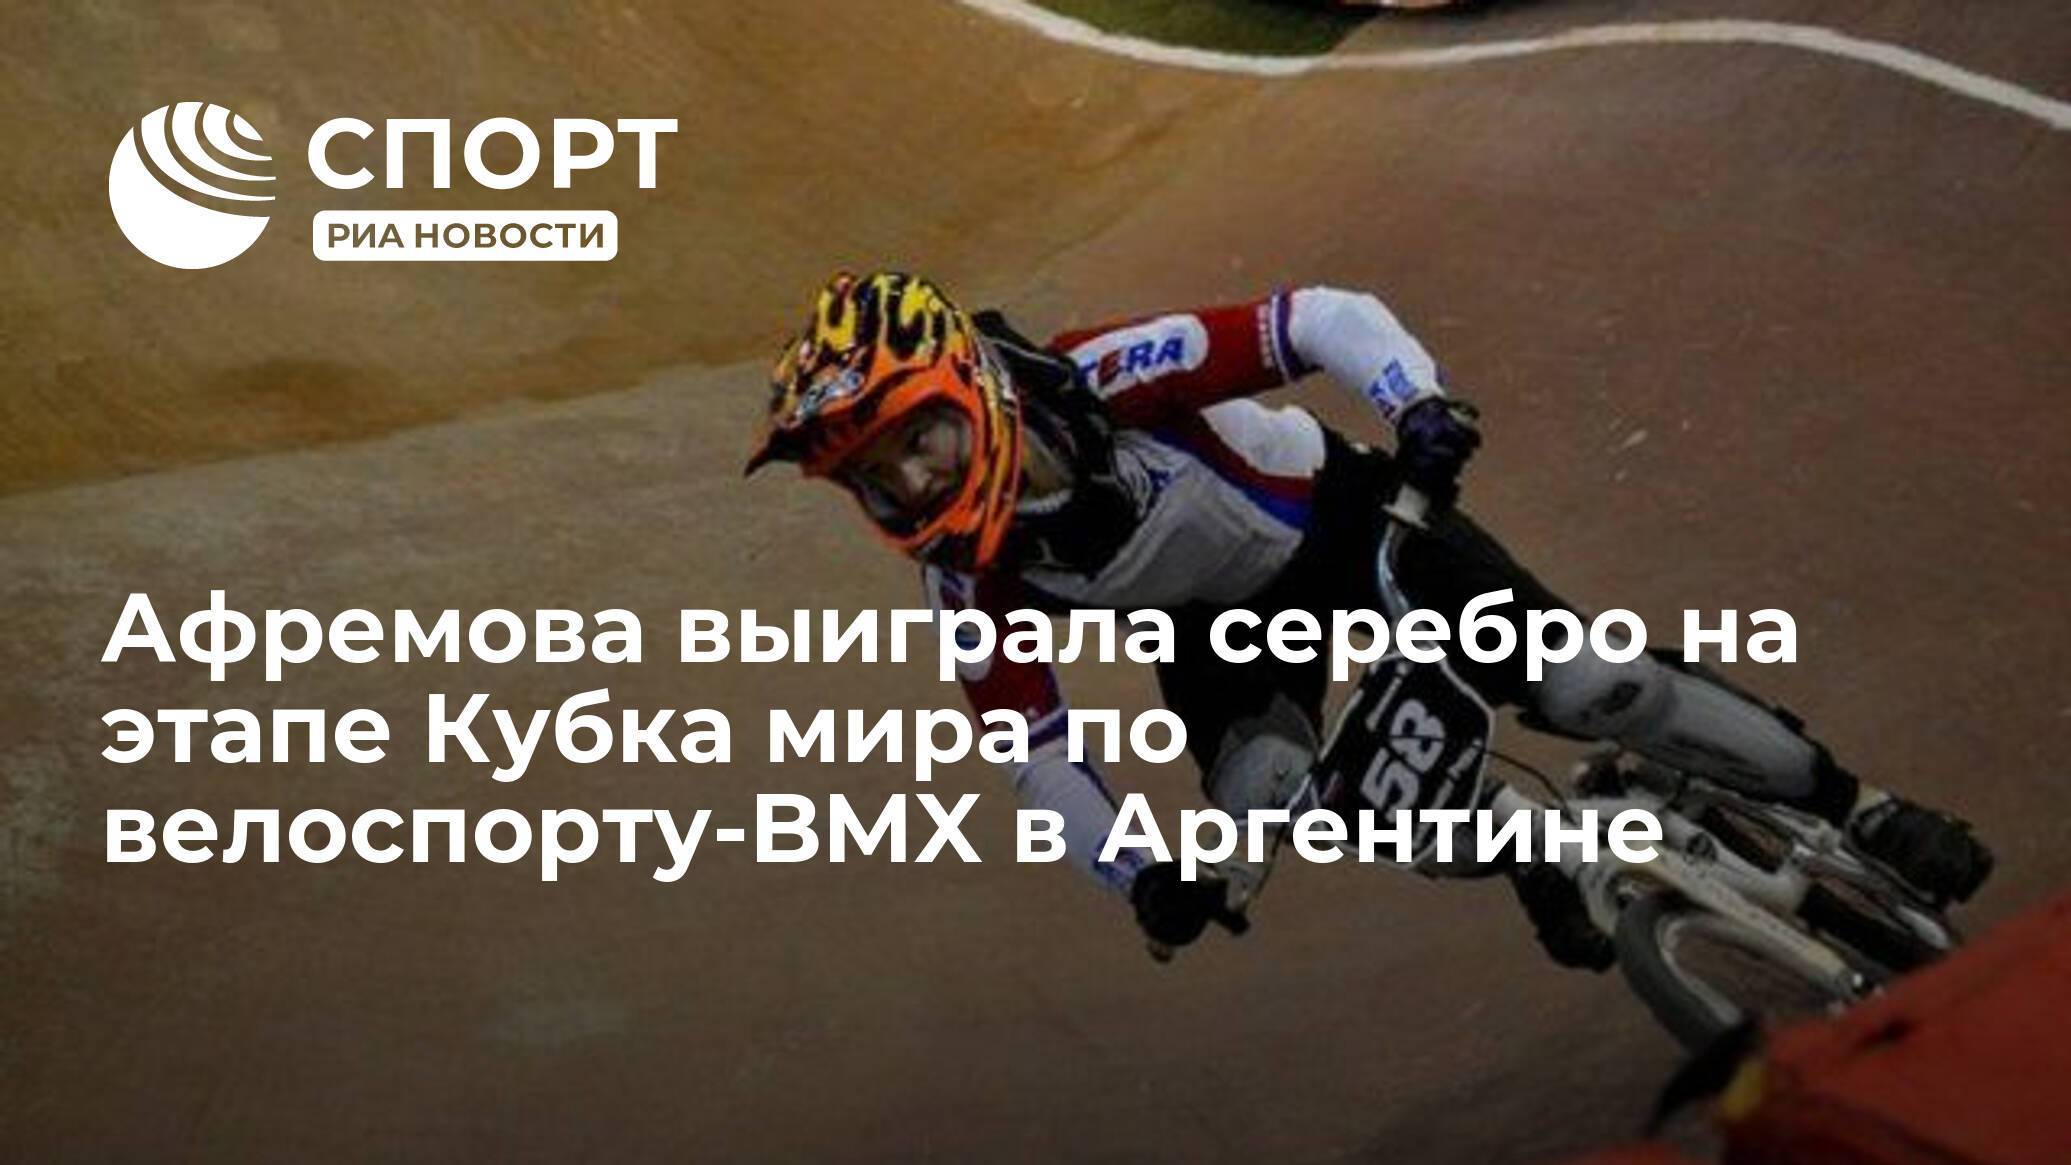 Олимпийские надежды bmx :: федерация велосипедного спорта россии